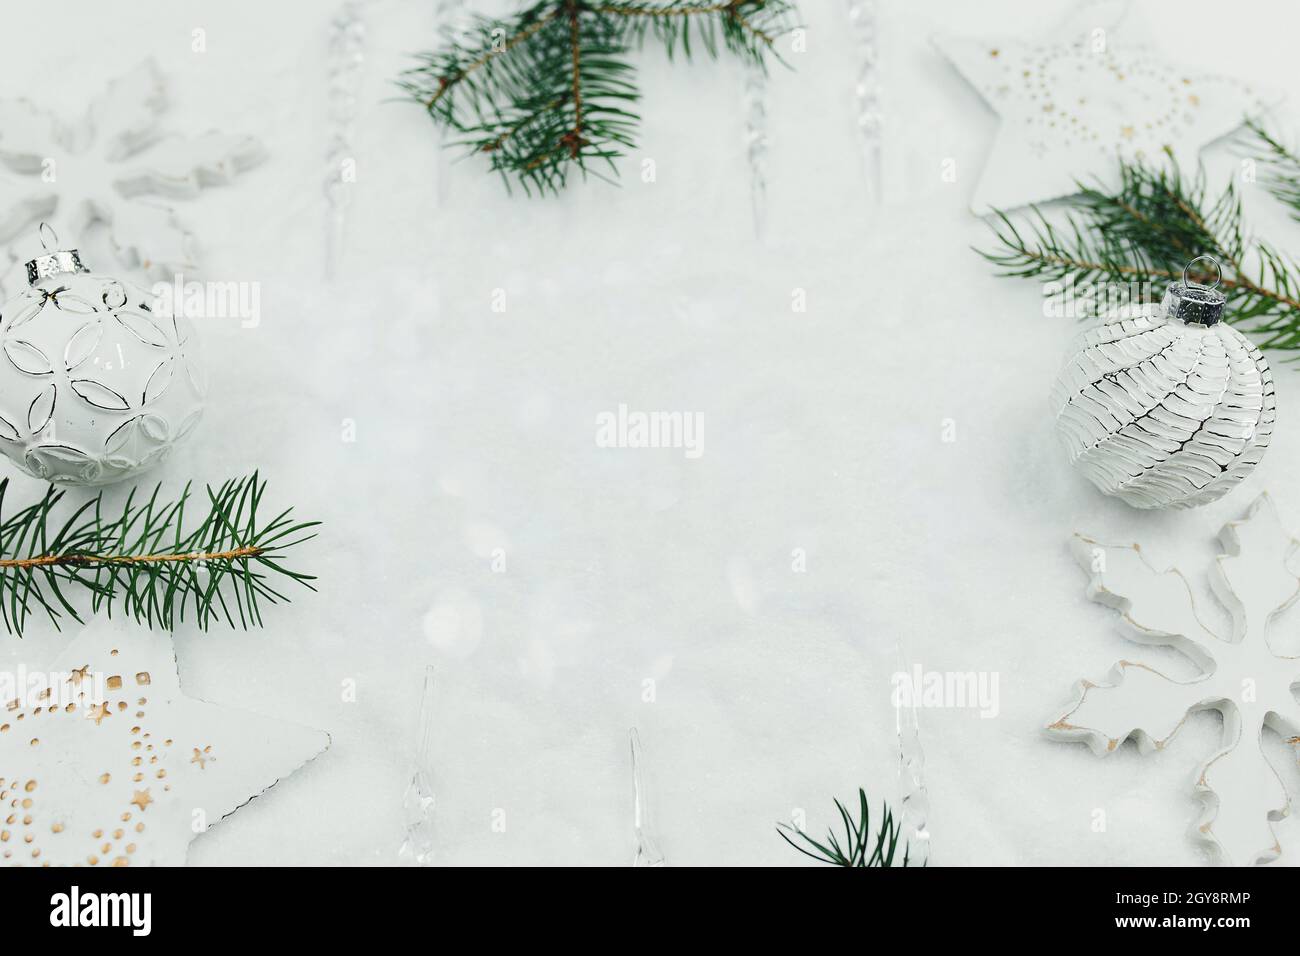 Trang trí Noel trắng và nhánh tuyết trên tuyết, thiệp Noel... Bộ sưu tập Nền Noel chất lượng tốt sẽ giúp bạn dễ dàng chọn lựa một phong cách trang trí ưng ý cho mùa lễ hội đầy ý nghĩa.